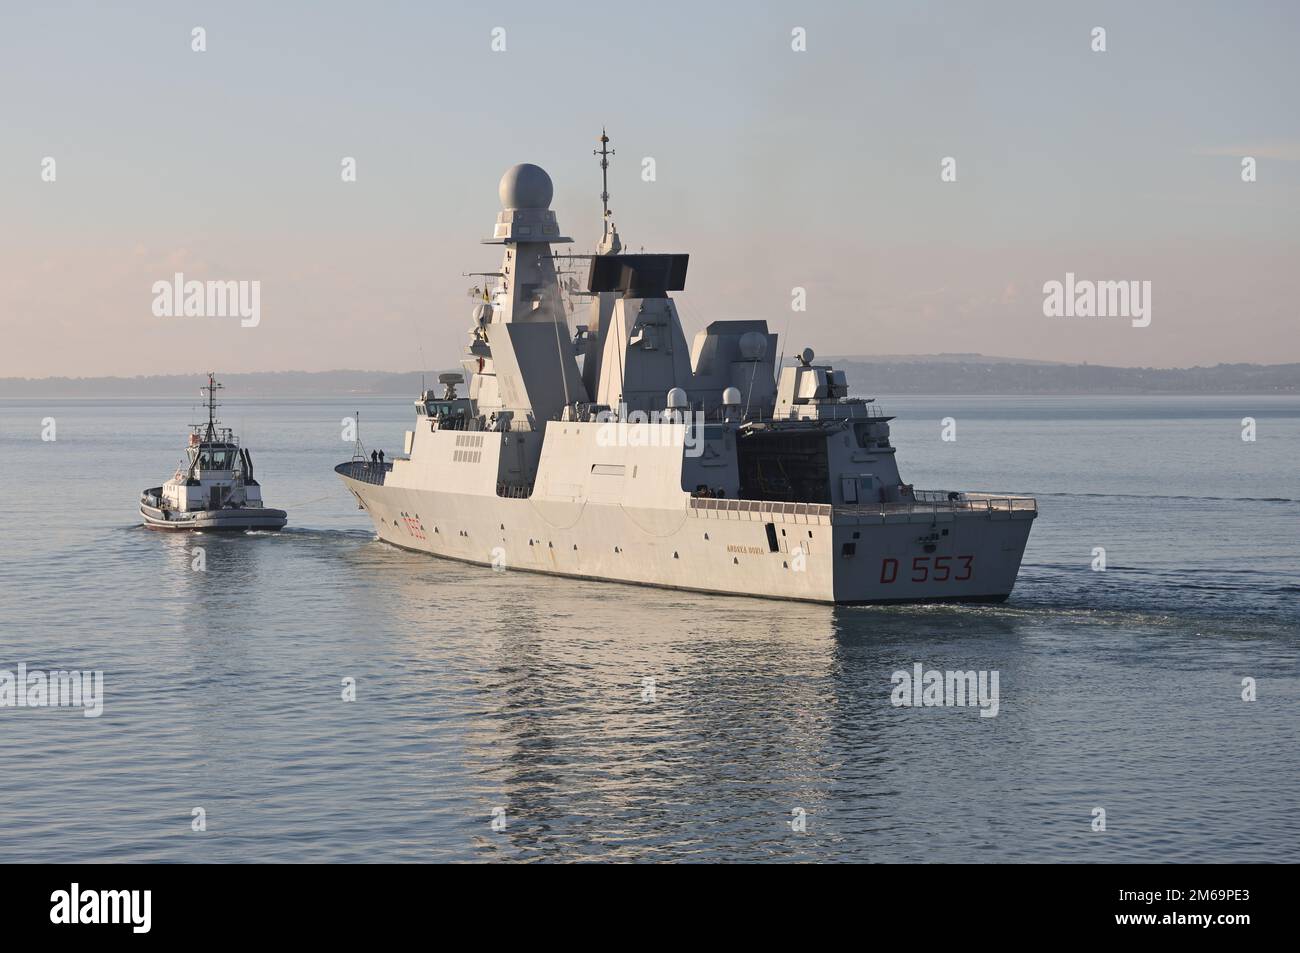 Le destroyer de la Marine italienne ANDREA DORIA (D553) se dirige dans les eaux calmes du Solent Banque D'Images